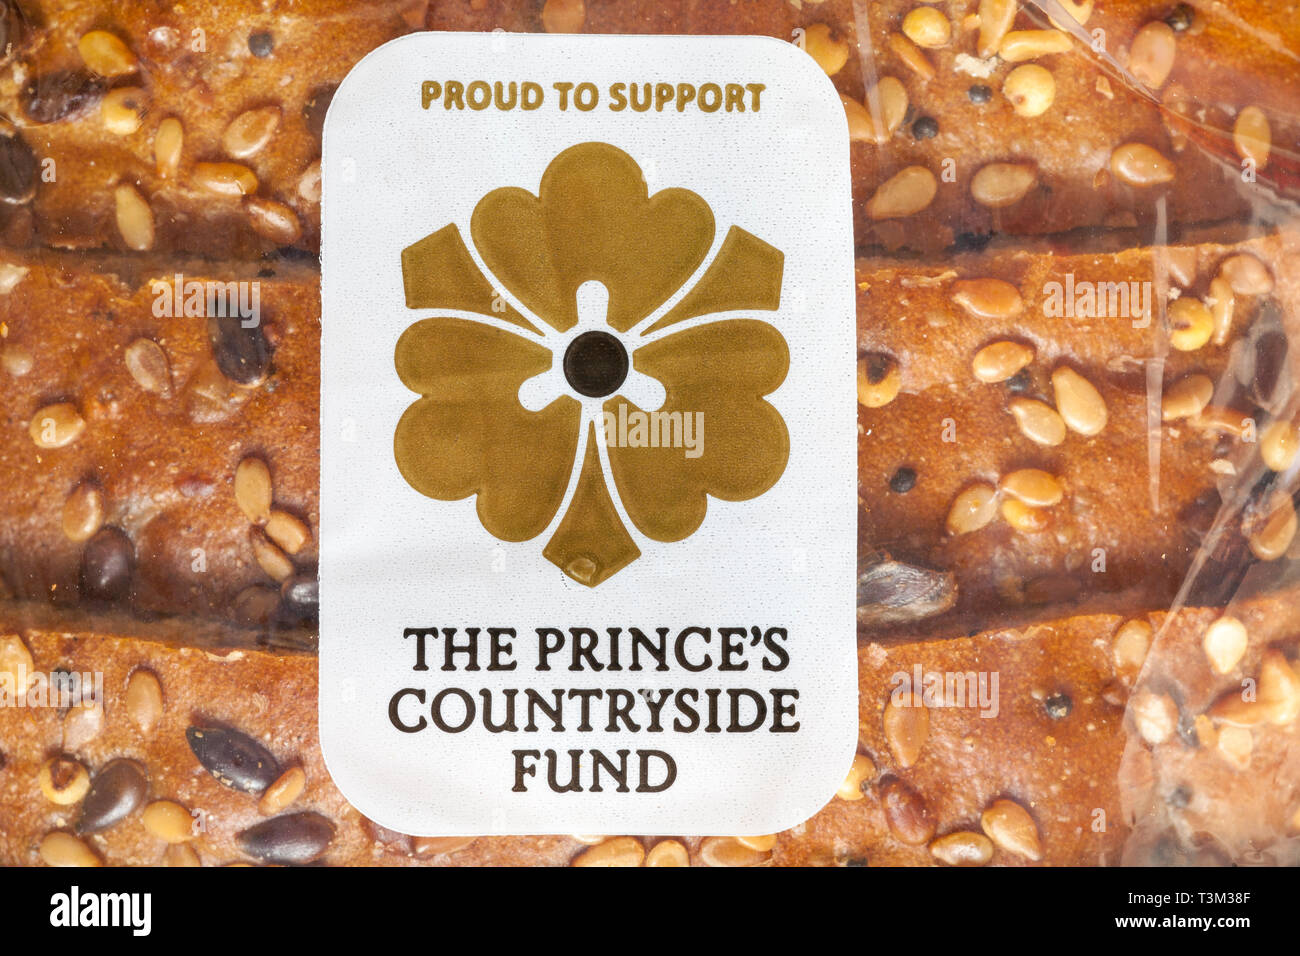 Fier de soutenir le symbole du Fonds de campagne du Prince sur le pain De pain semé de Warburtons Banque D'Images